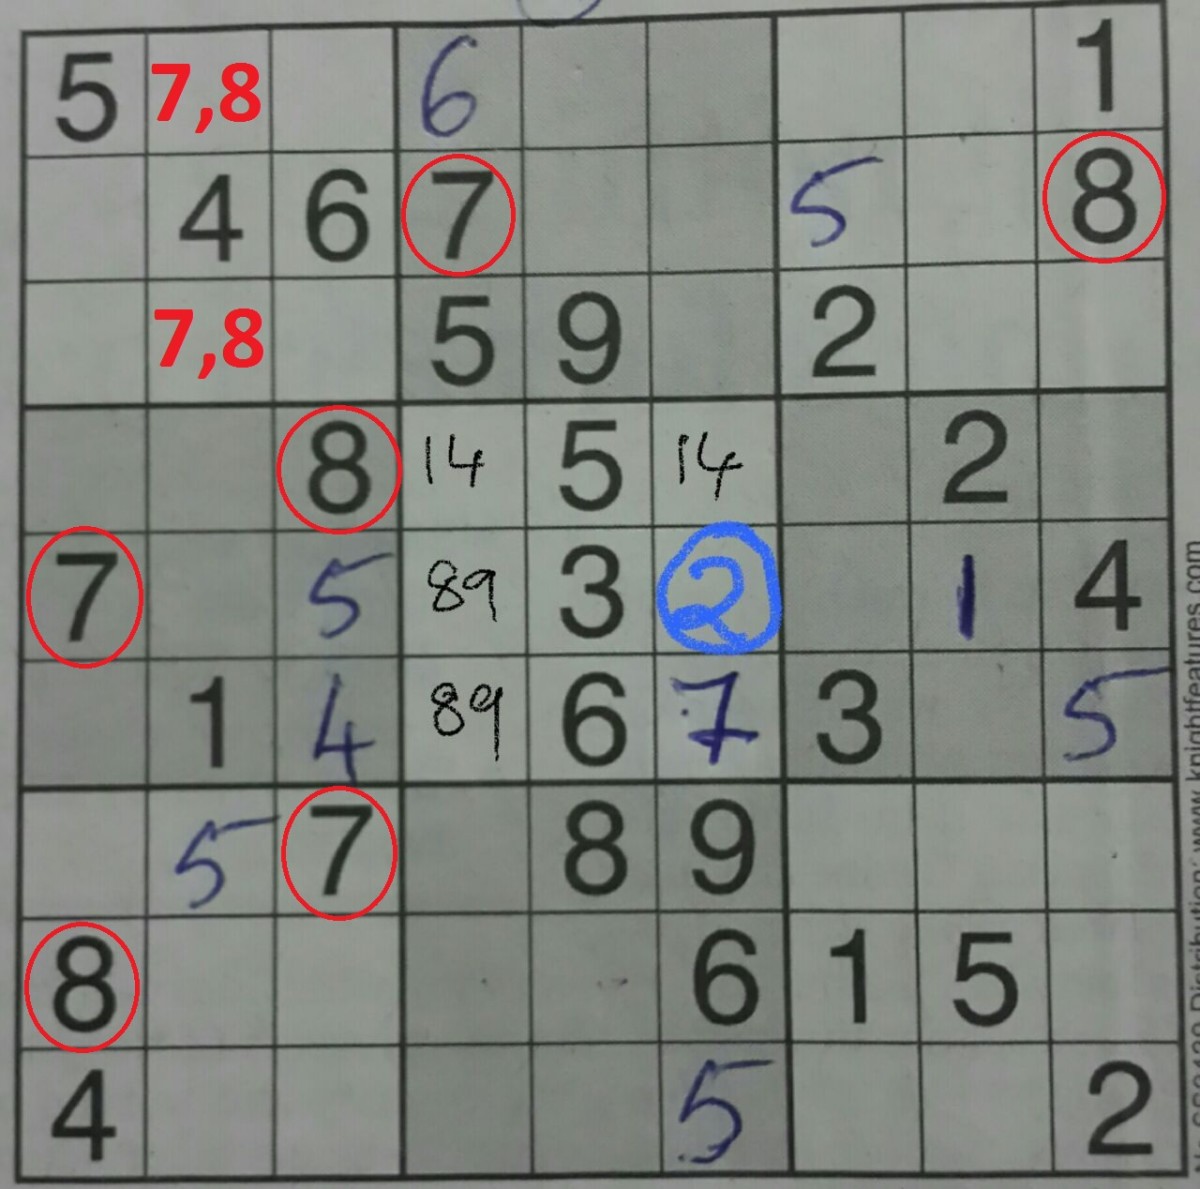 5-simple-tricks-to-solve-sudoku